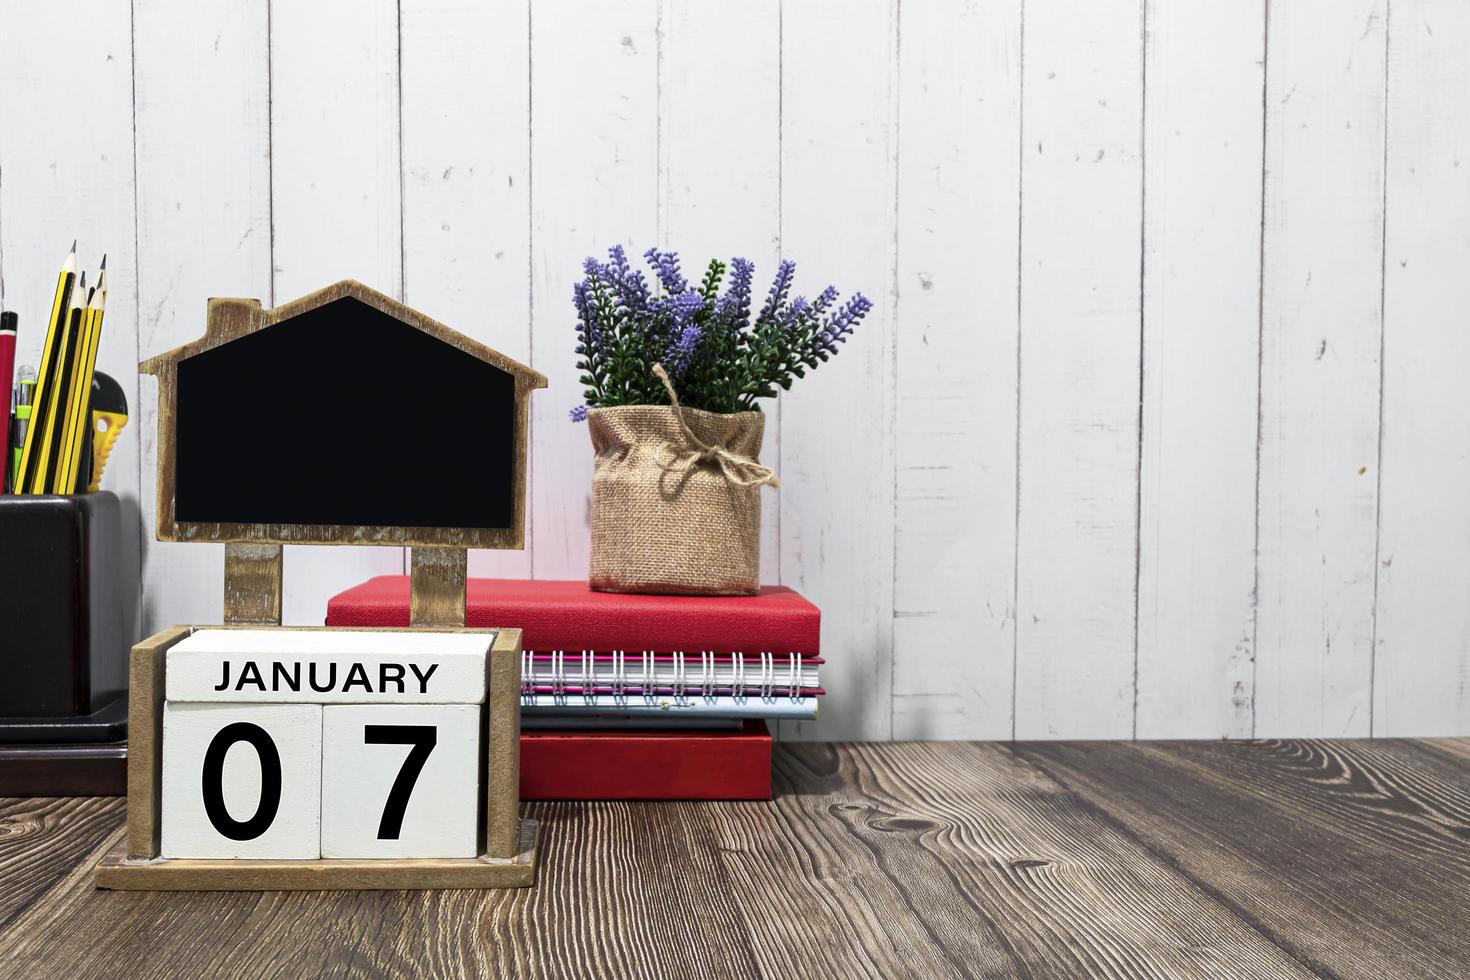 07 de enero texto de fecha de calendario en bloque de madera blanco con papelería en escritorio de madera foto